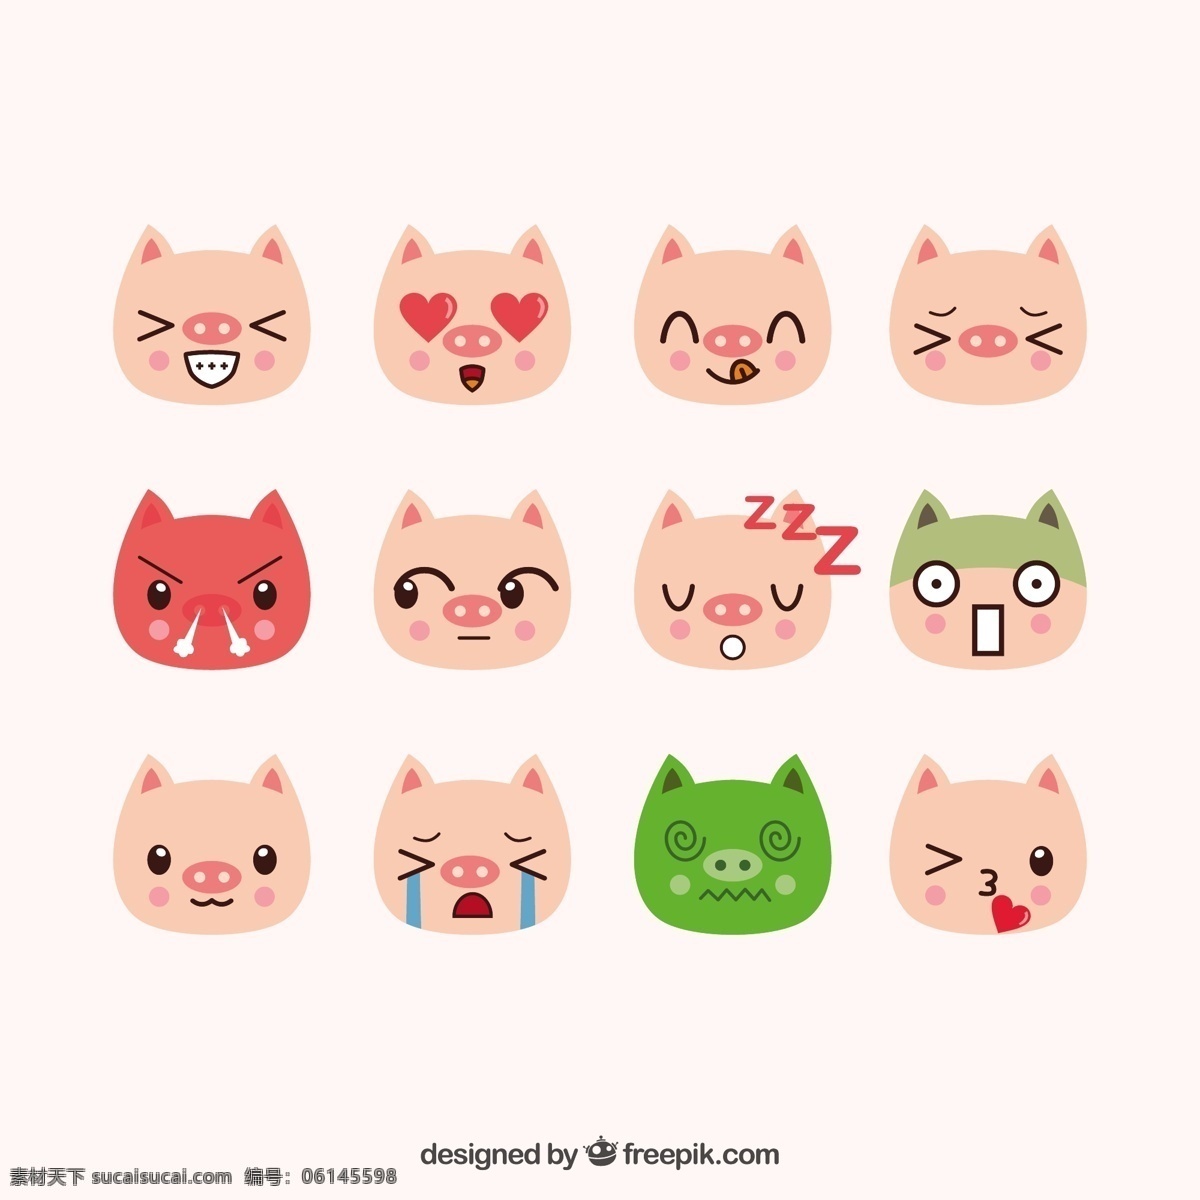 组 各种 表情 包 卡通 猪 可爱 卡哇伊 矢量素材 动物 小动物 创意设计 简约 创意 元素 生物元素 动物元素